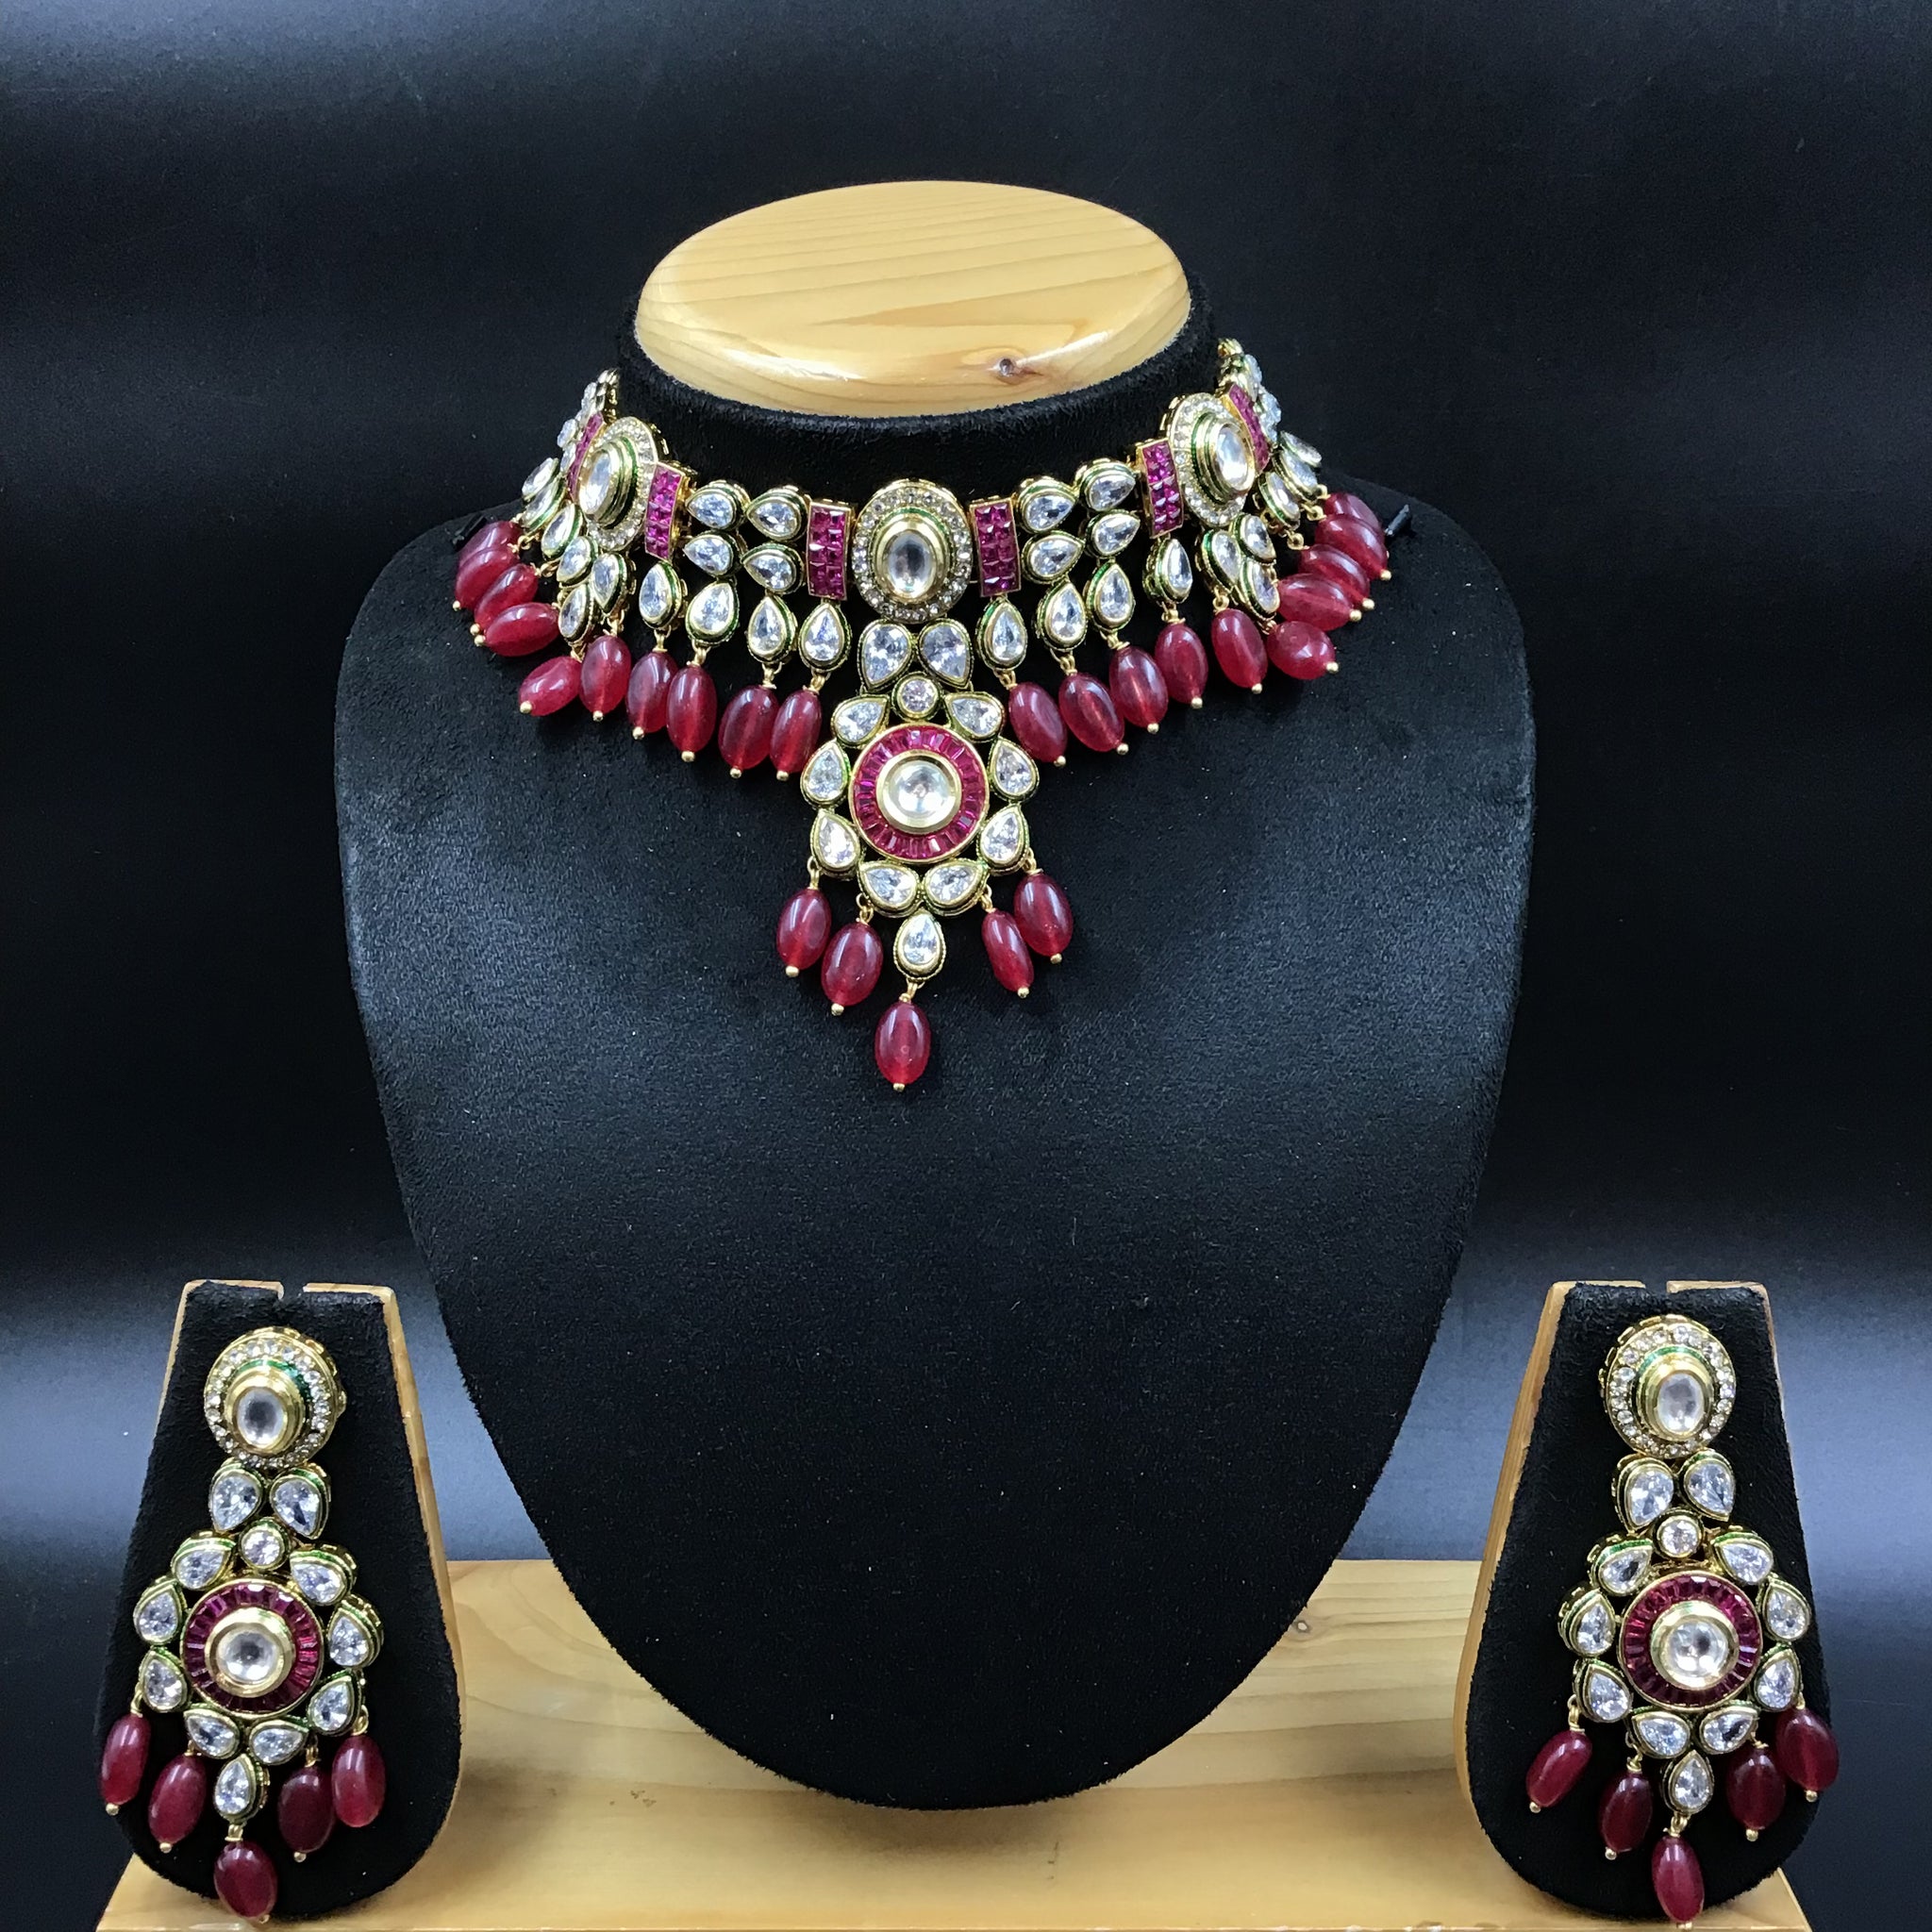 Ruby Green Polki Necklace Set - Dazzles Jewellery